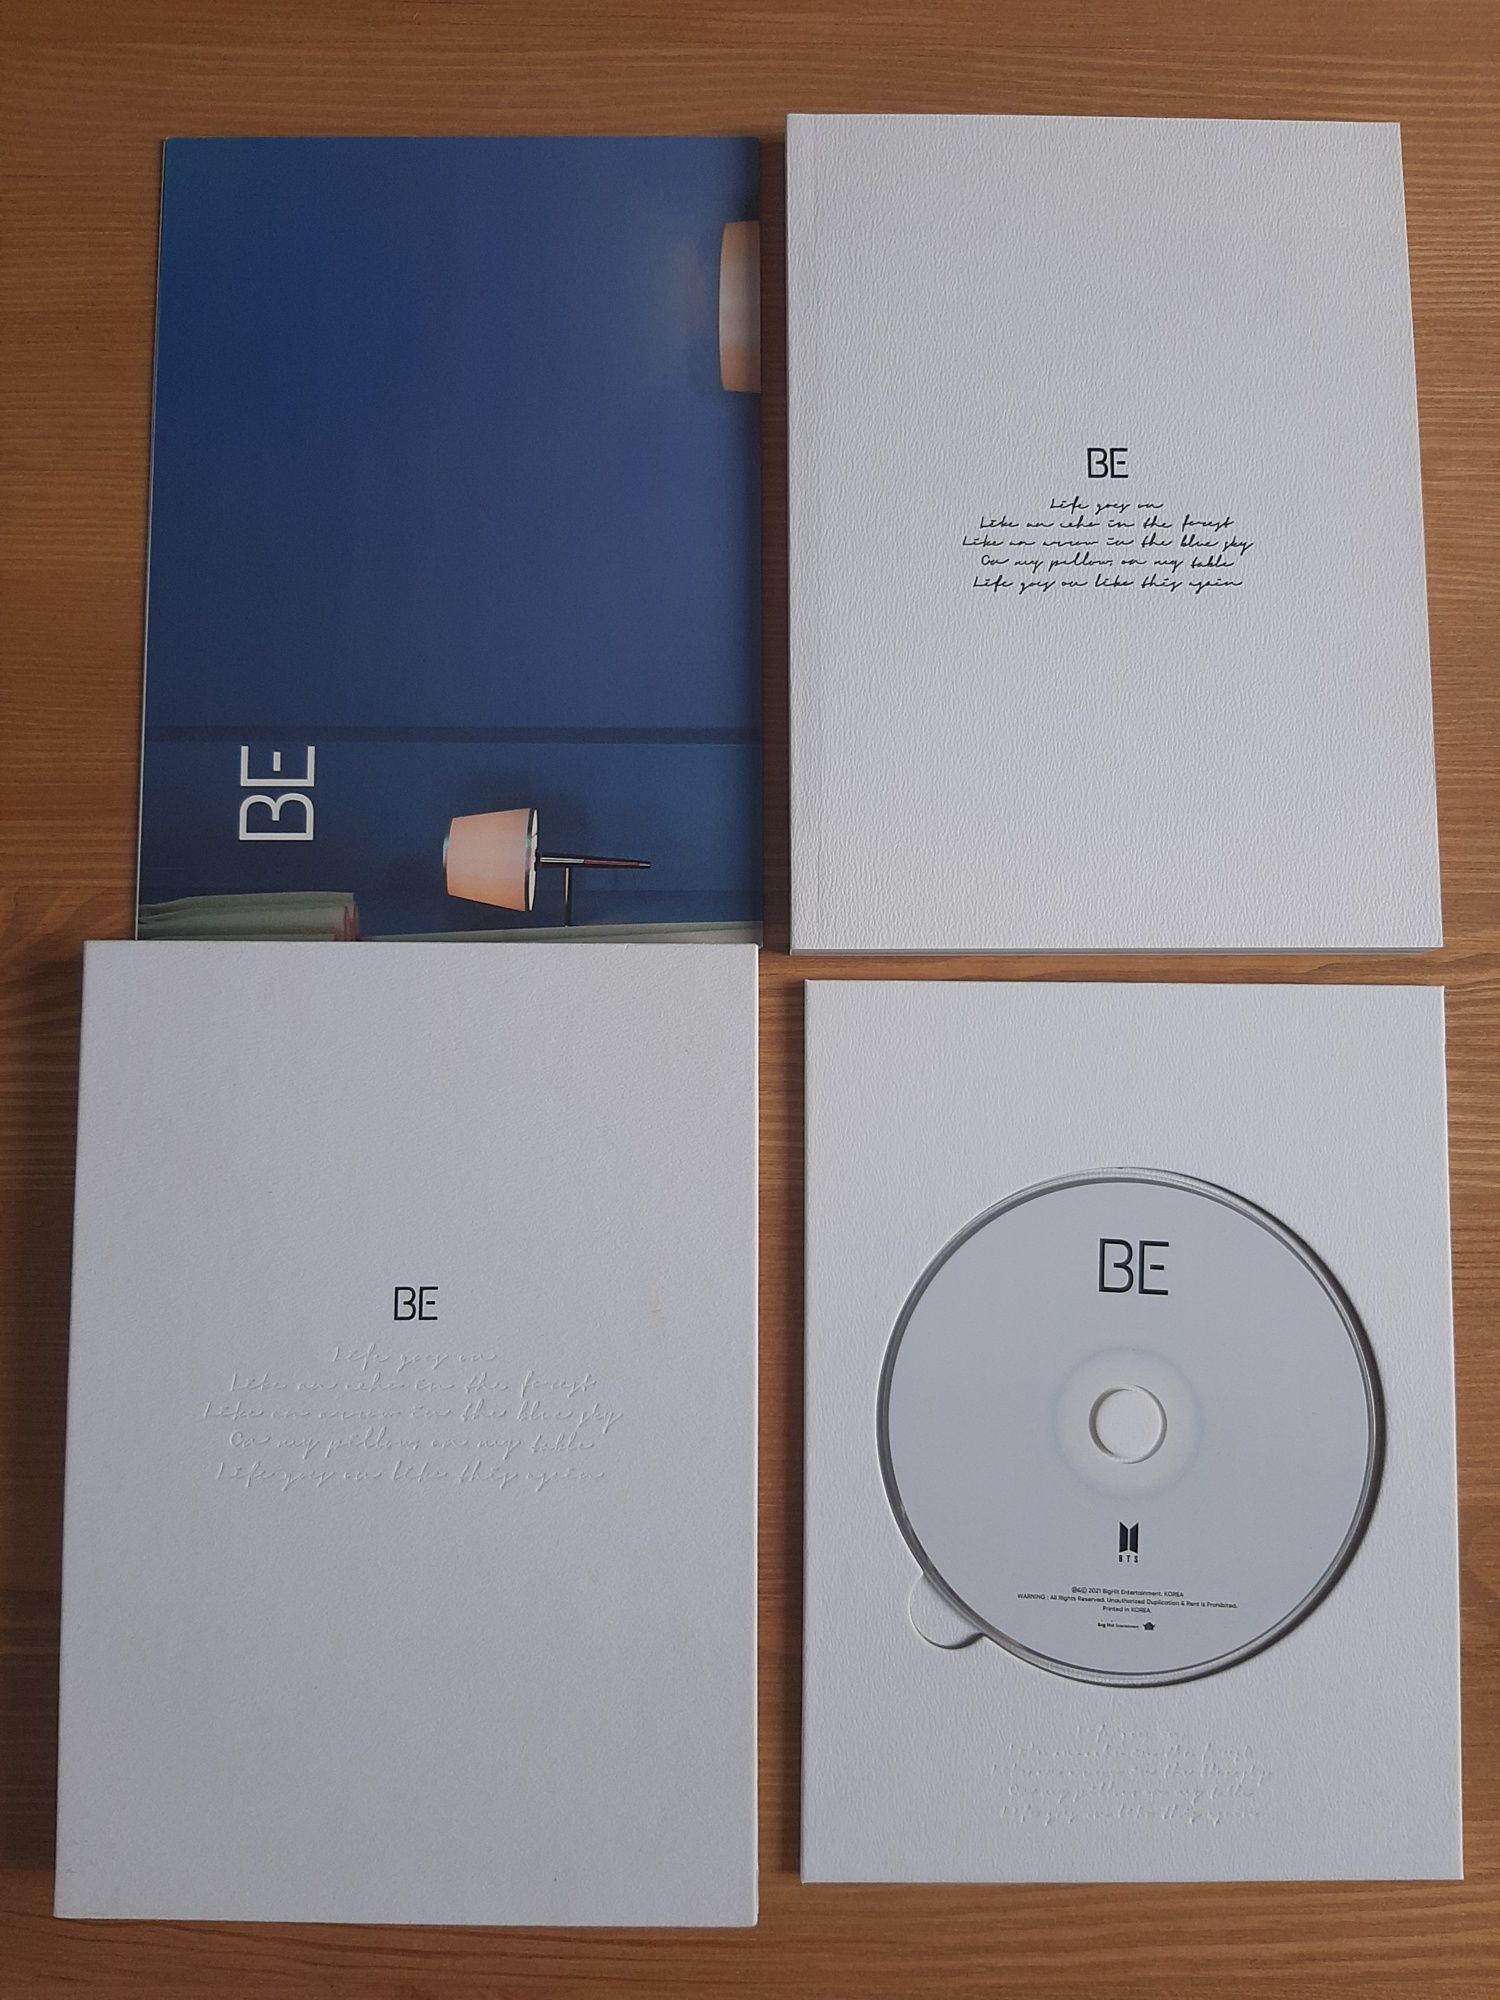 Album BTS BE (Essential Edition)